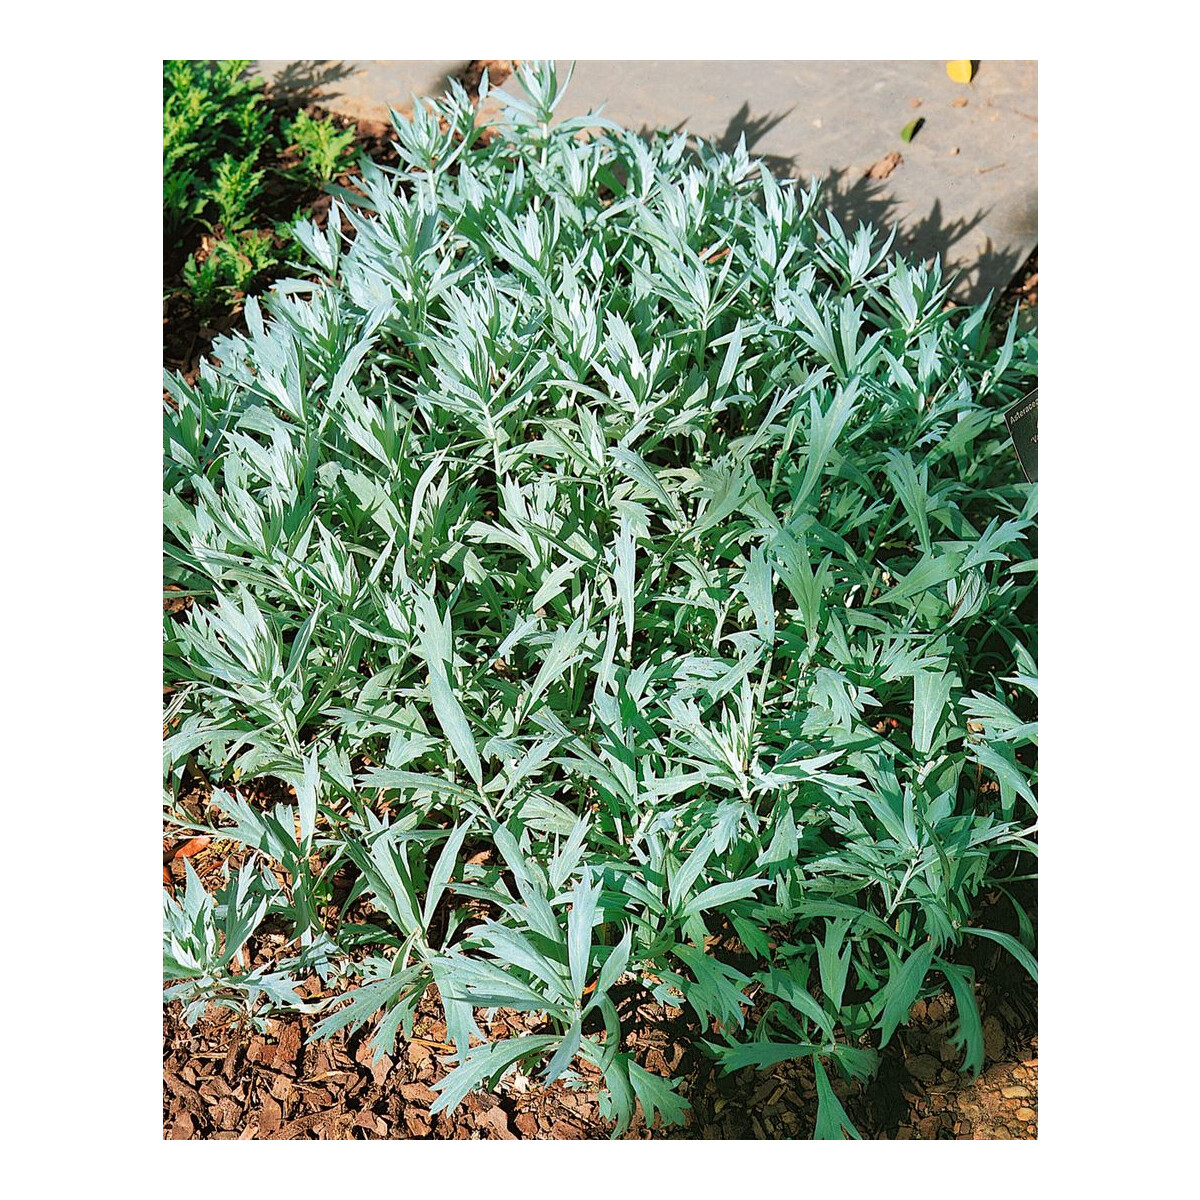 Artemisia ludoviciana Valerie Finnis P 0,5